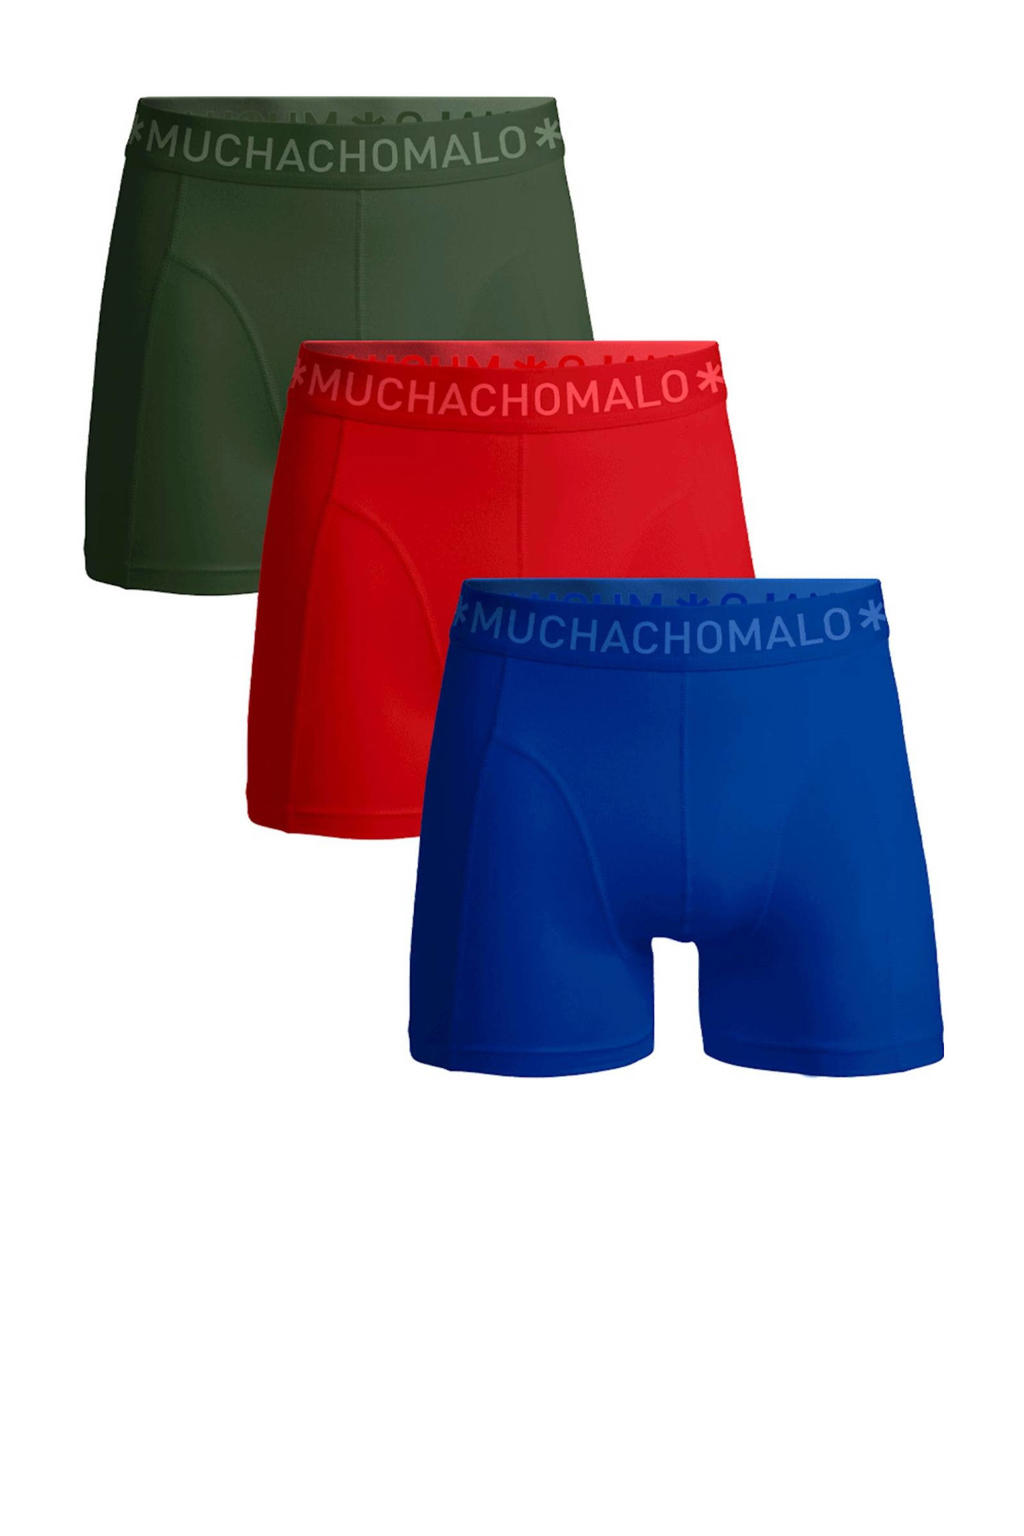 Muchachomalo   boxershort Solid - set van 3 groen/rood/blauw